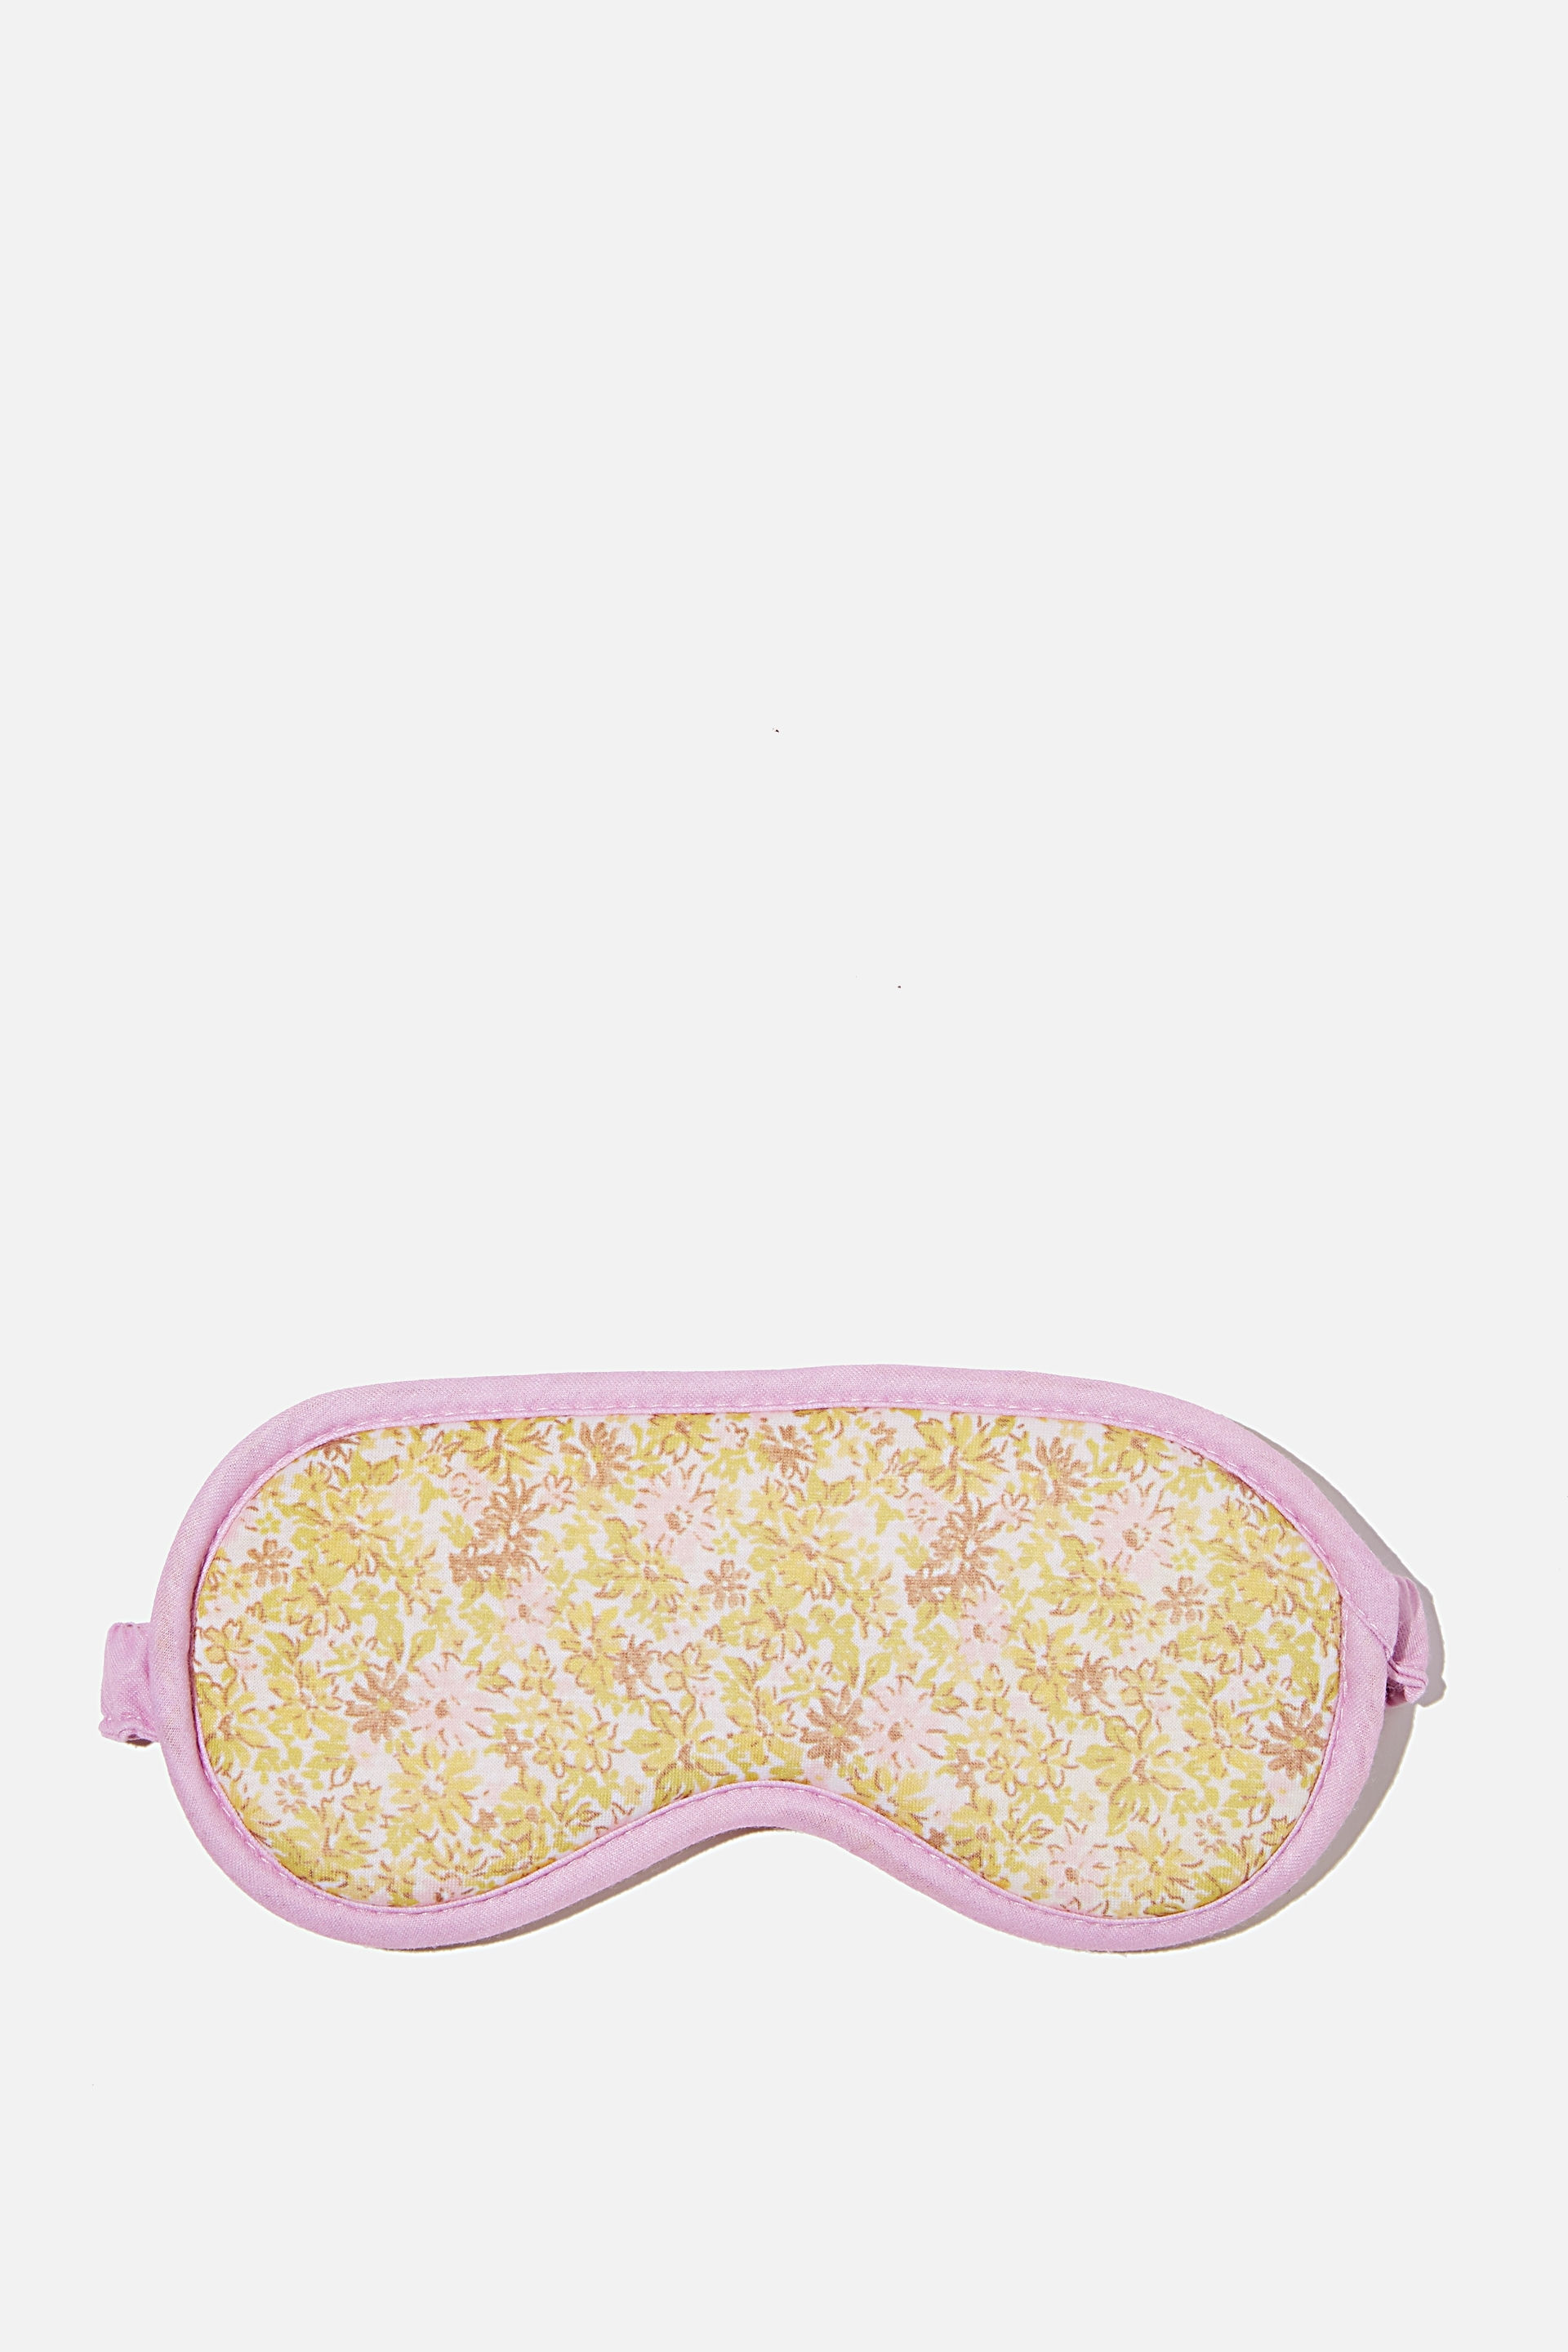 Typo - Premium Sleep Eye Mask - Suzi floral